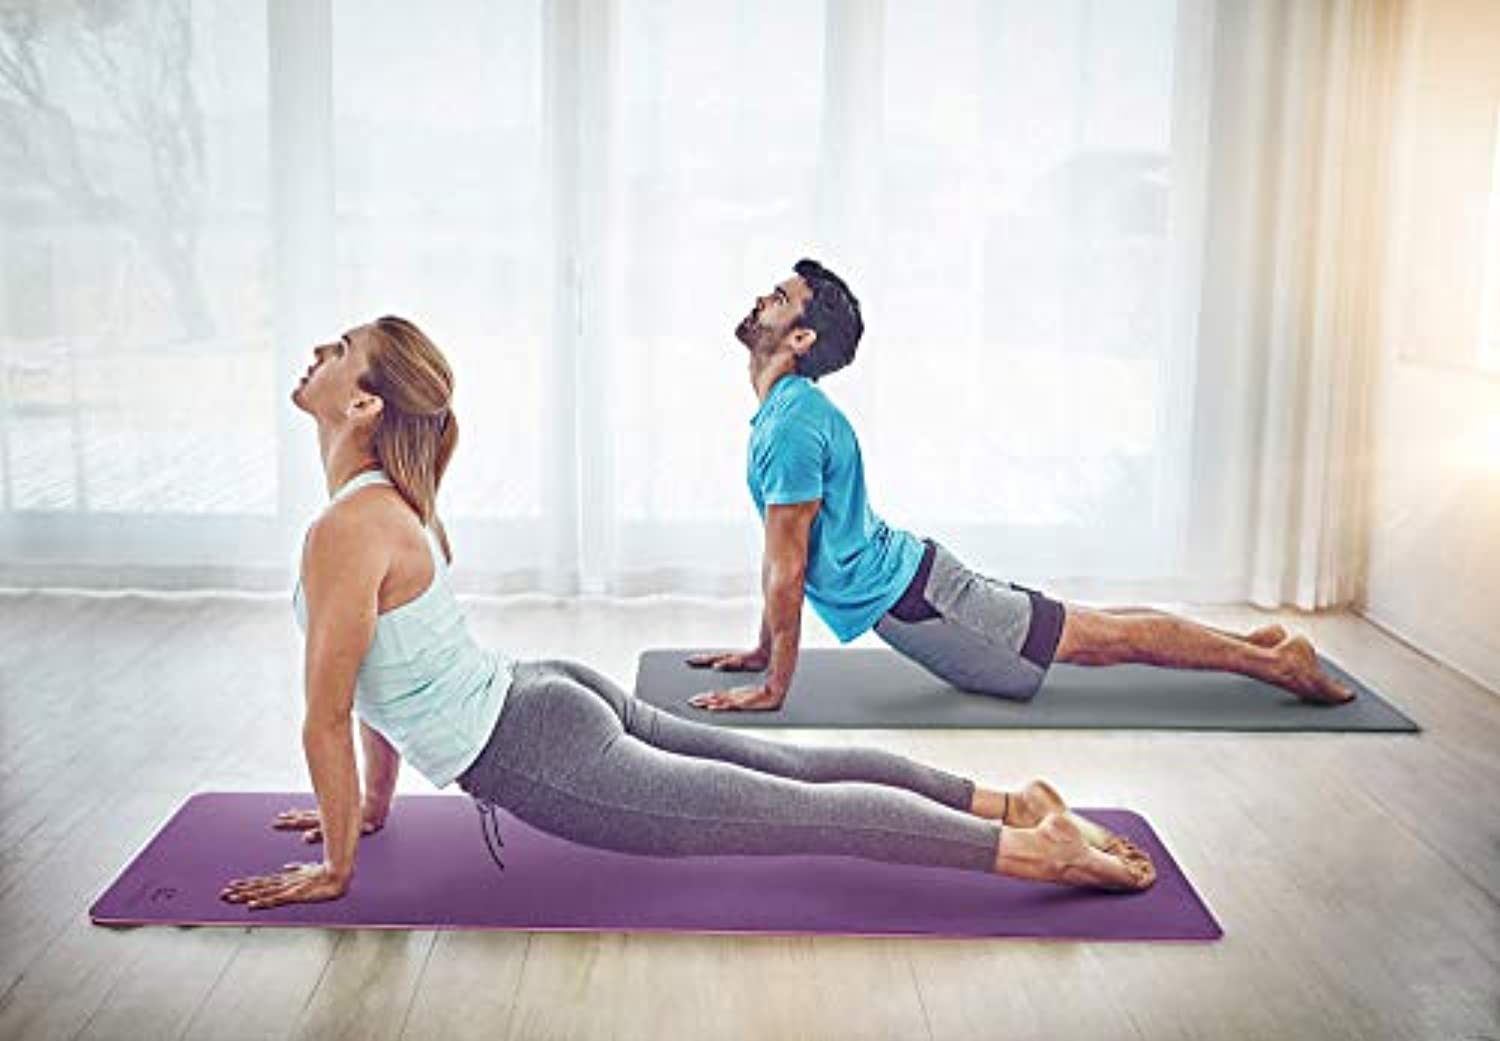 Esterilla de yoga grande de 0.236 x 0.157 x 0.315 in, extra gruesa,  duradera, ecológica, antideslizante y sin olor, para ejercicio descalzo y  gimnasio